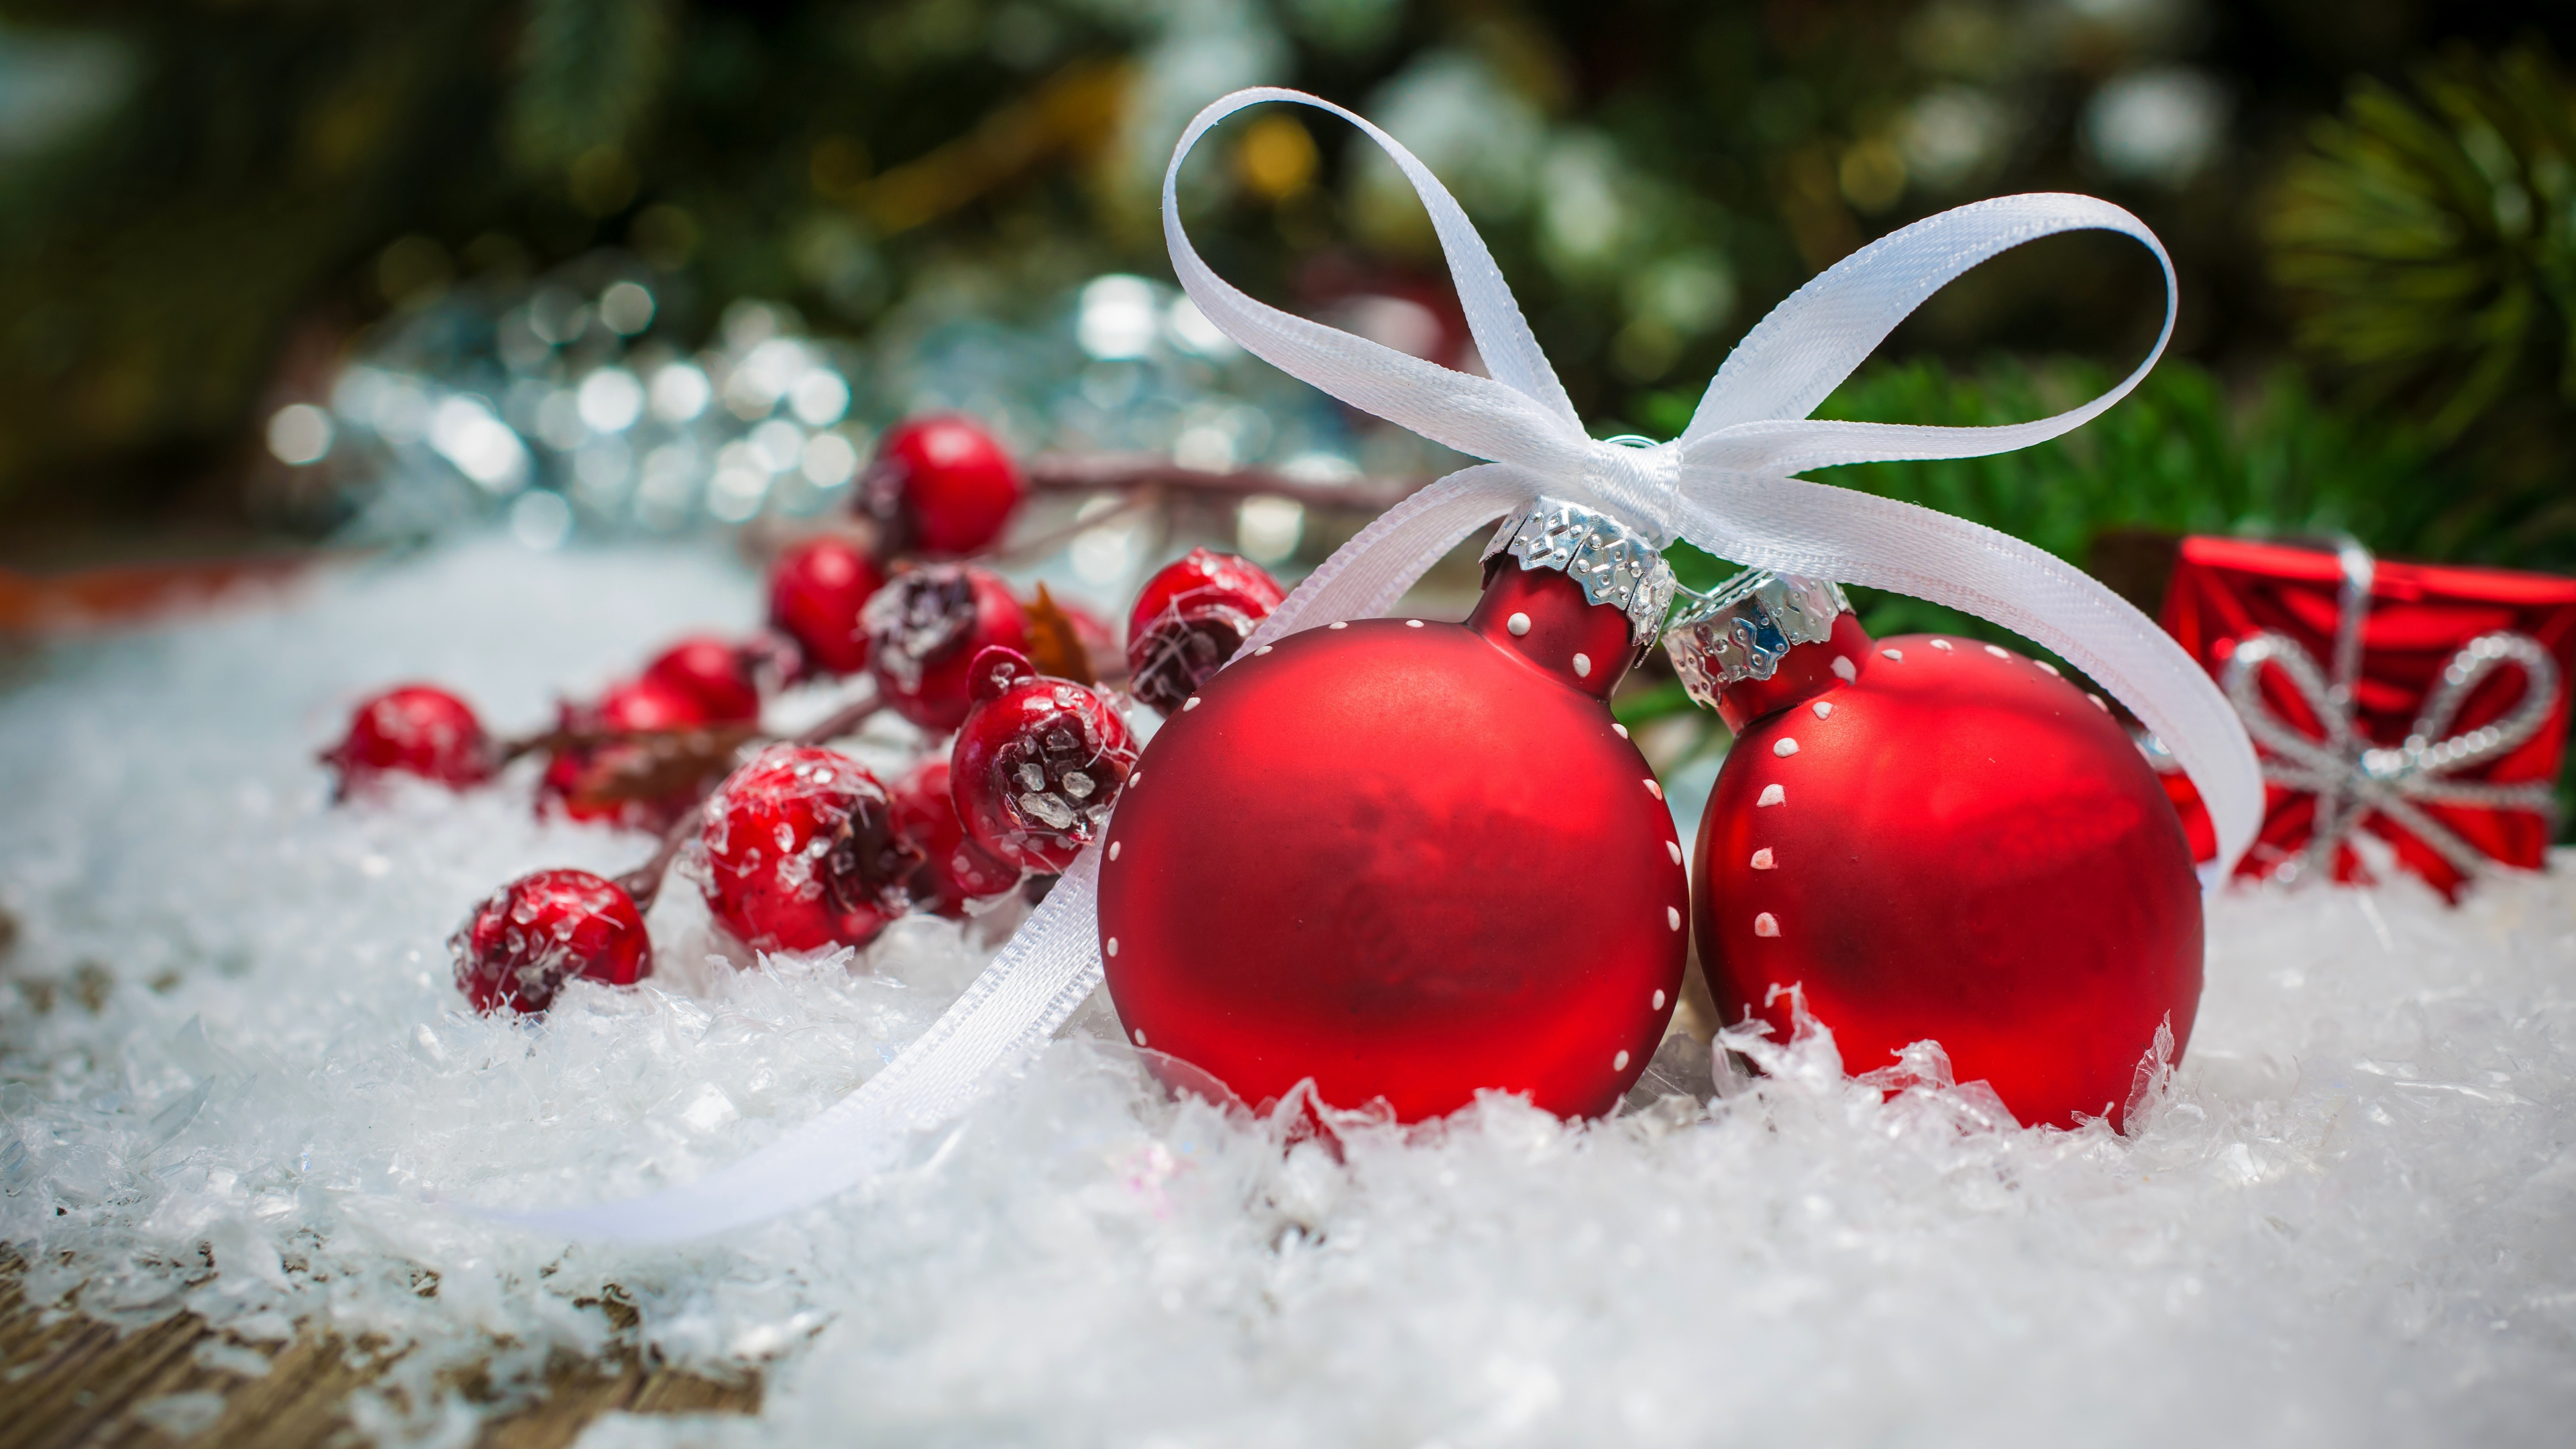 圣诞节的装饰品, 圣诞节那天, 圣诞装饰, 新的一年, 小红莓 壁纸 3840x2160 允许